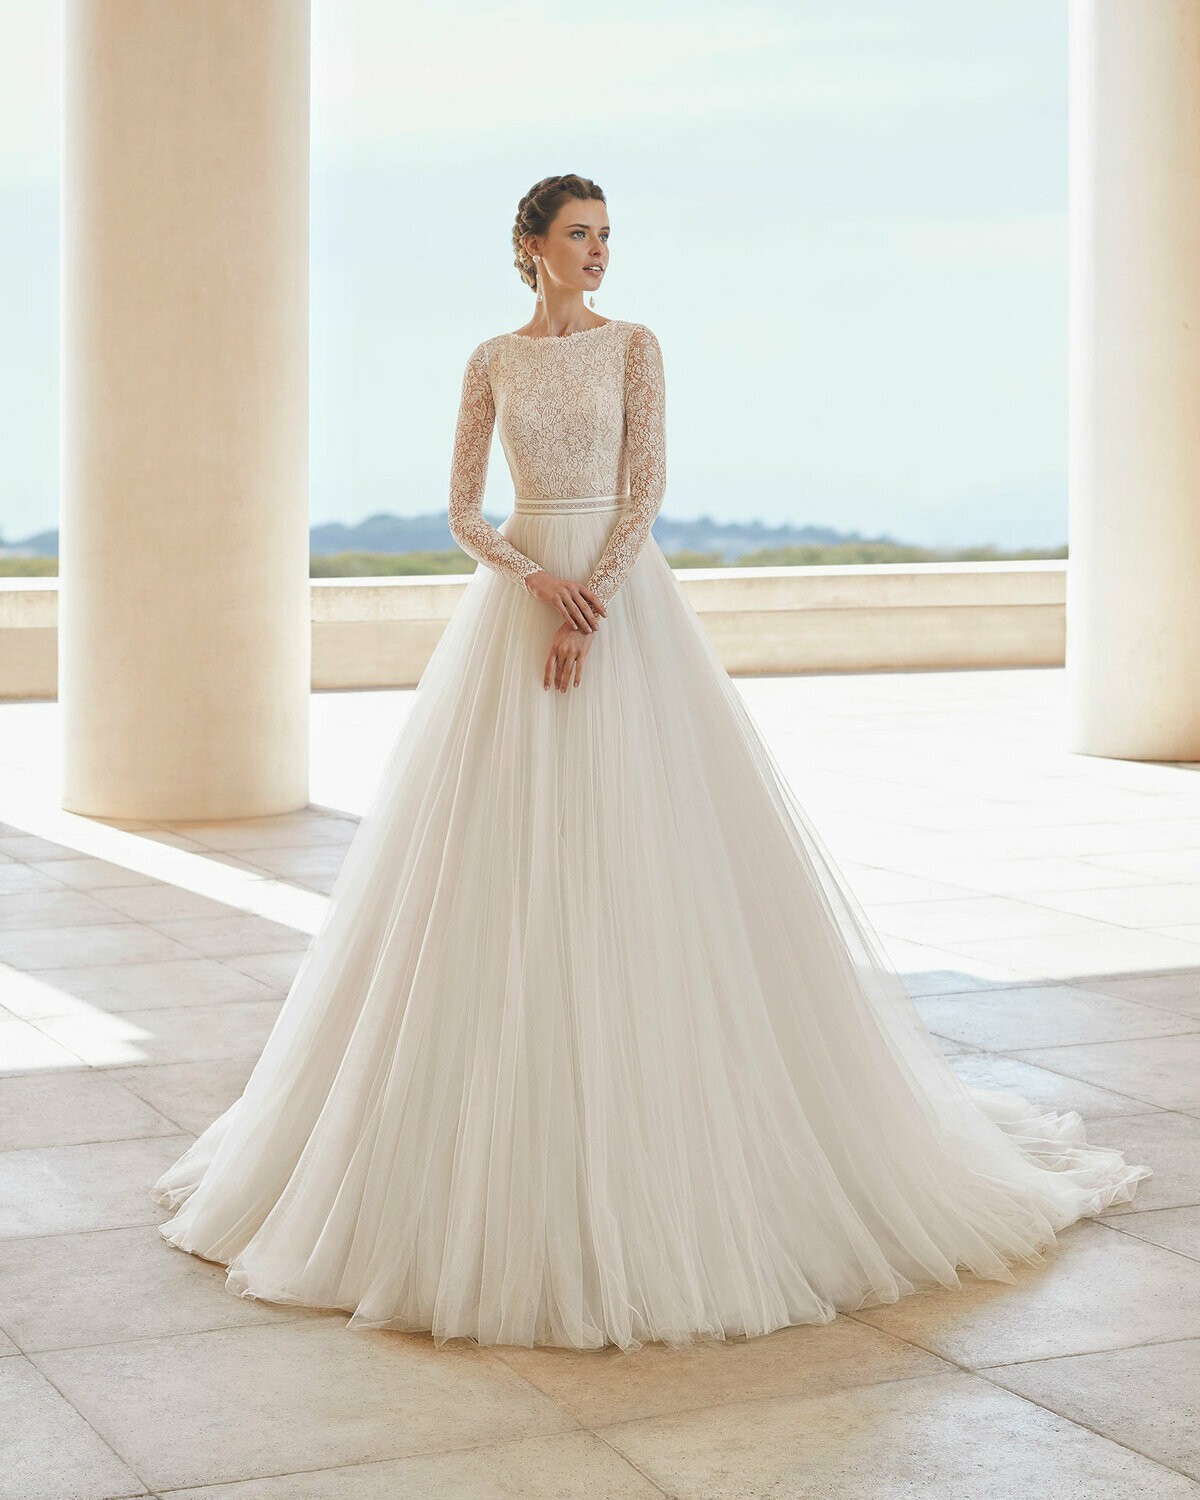 SALETA - abito da sposa collezione 2020 - Rosa Clarà Couture